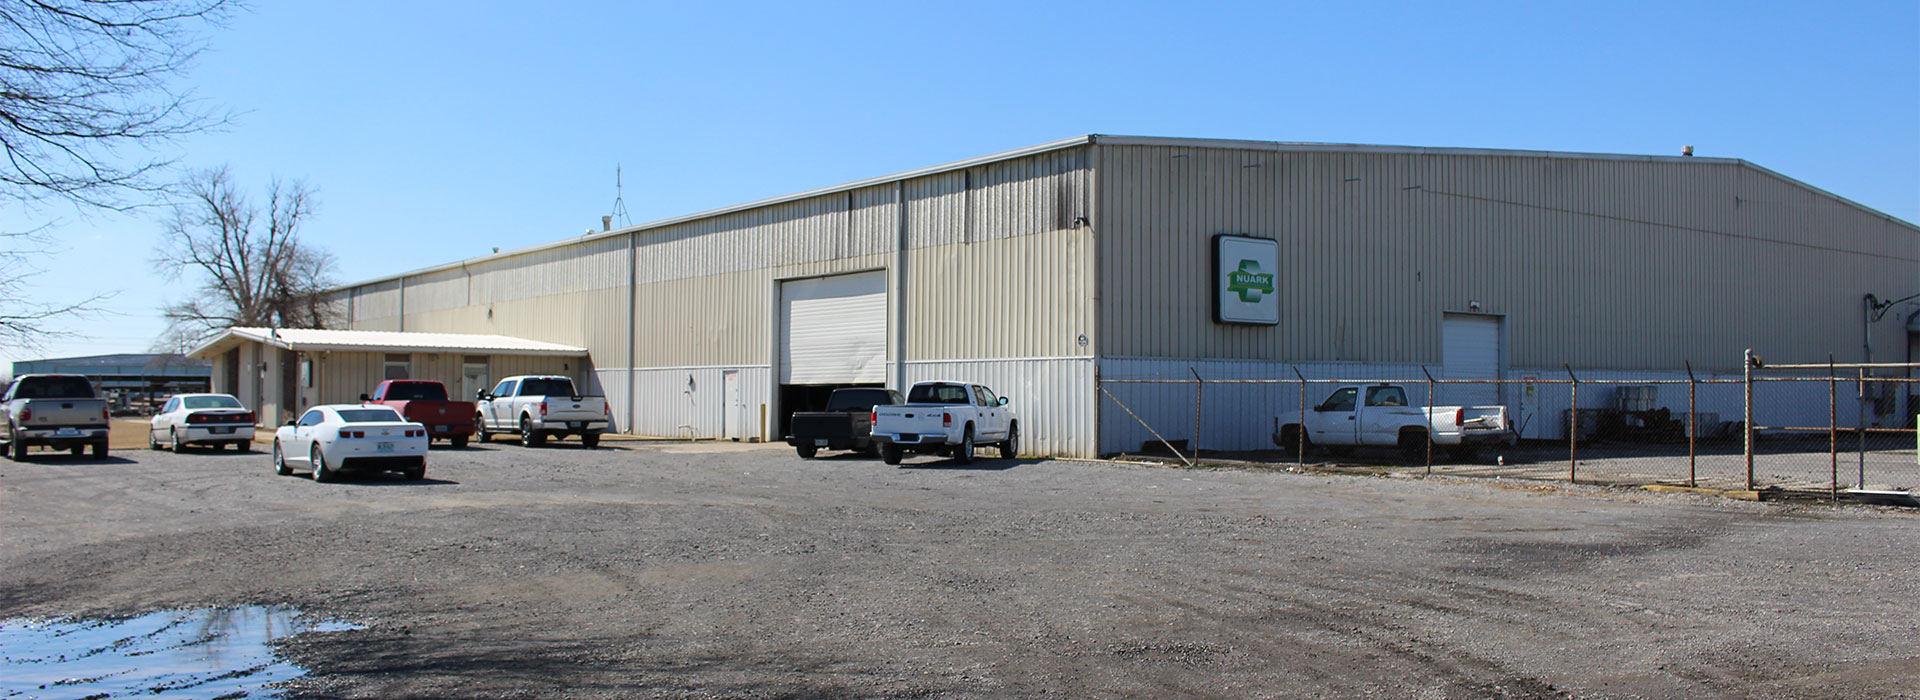 Nuark Warehouse located in Blytheville, AR.